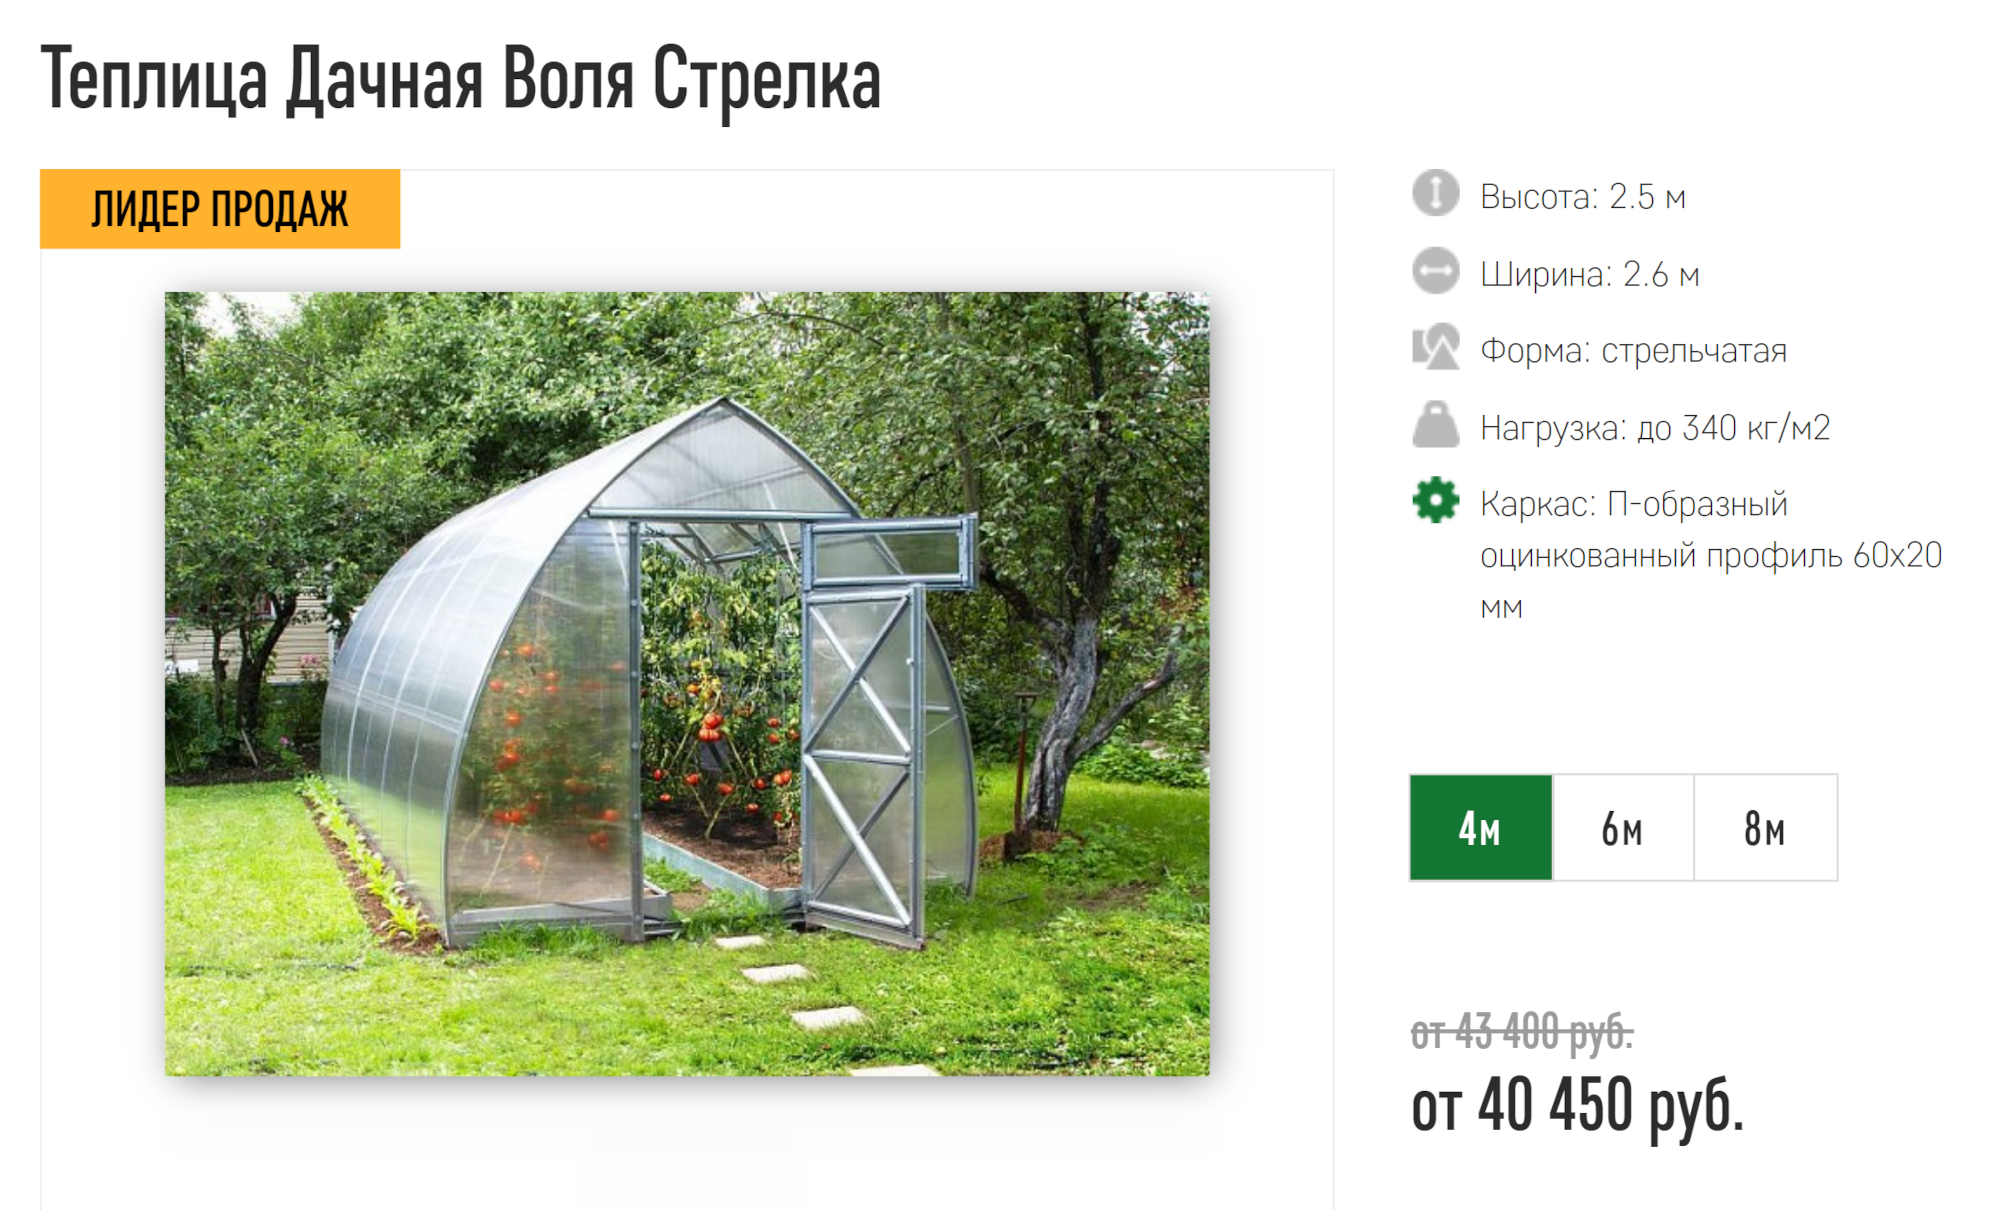 Каплевидная теплица выше арочной, так что в центре можно разместить высокие растения. Источник: master-teplic.ru